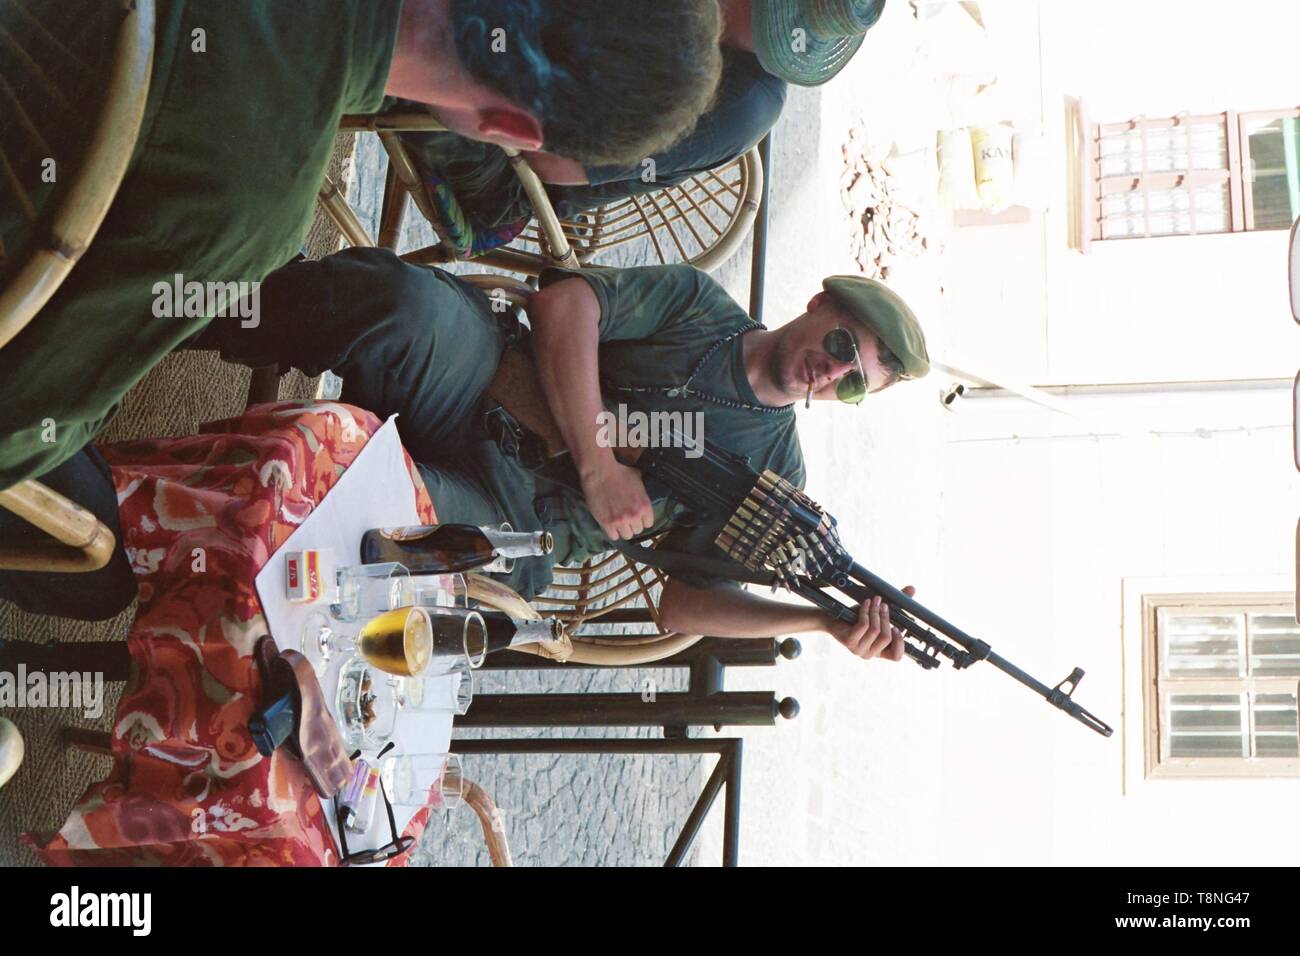 Un soldat croate pose avec une arme lourde dans un café dans la capitale croate Zagreb dans l'ex-Yougoslavie pendant le conflit de 1991-1992. Photo par Adam Alexander Banque D'Images